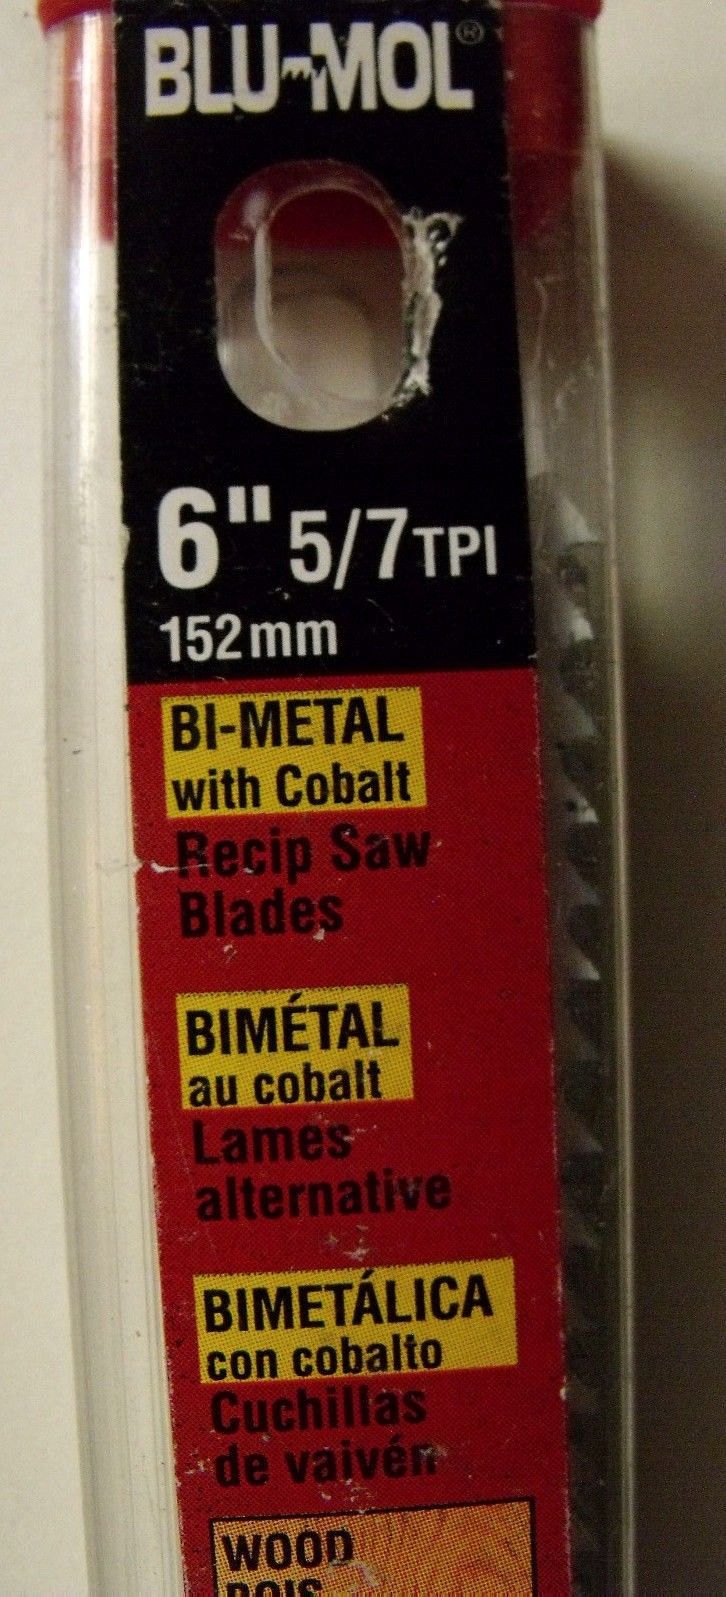 Blu-Mol 6481 6" x 5/7TPI Bi-Metal Reciprocating Saw Blades